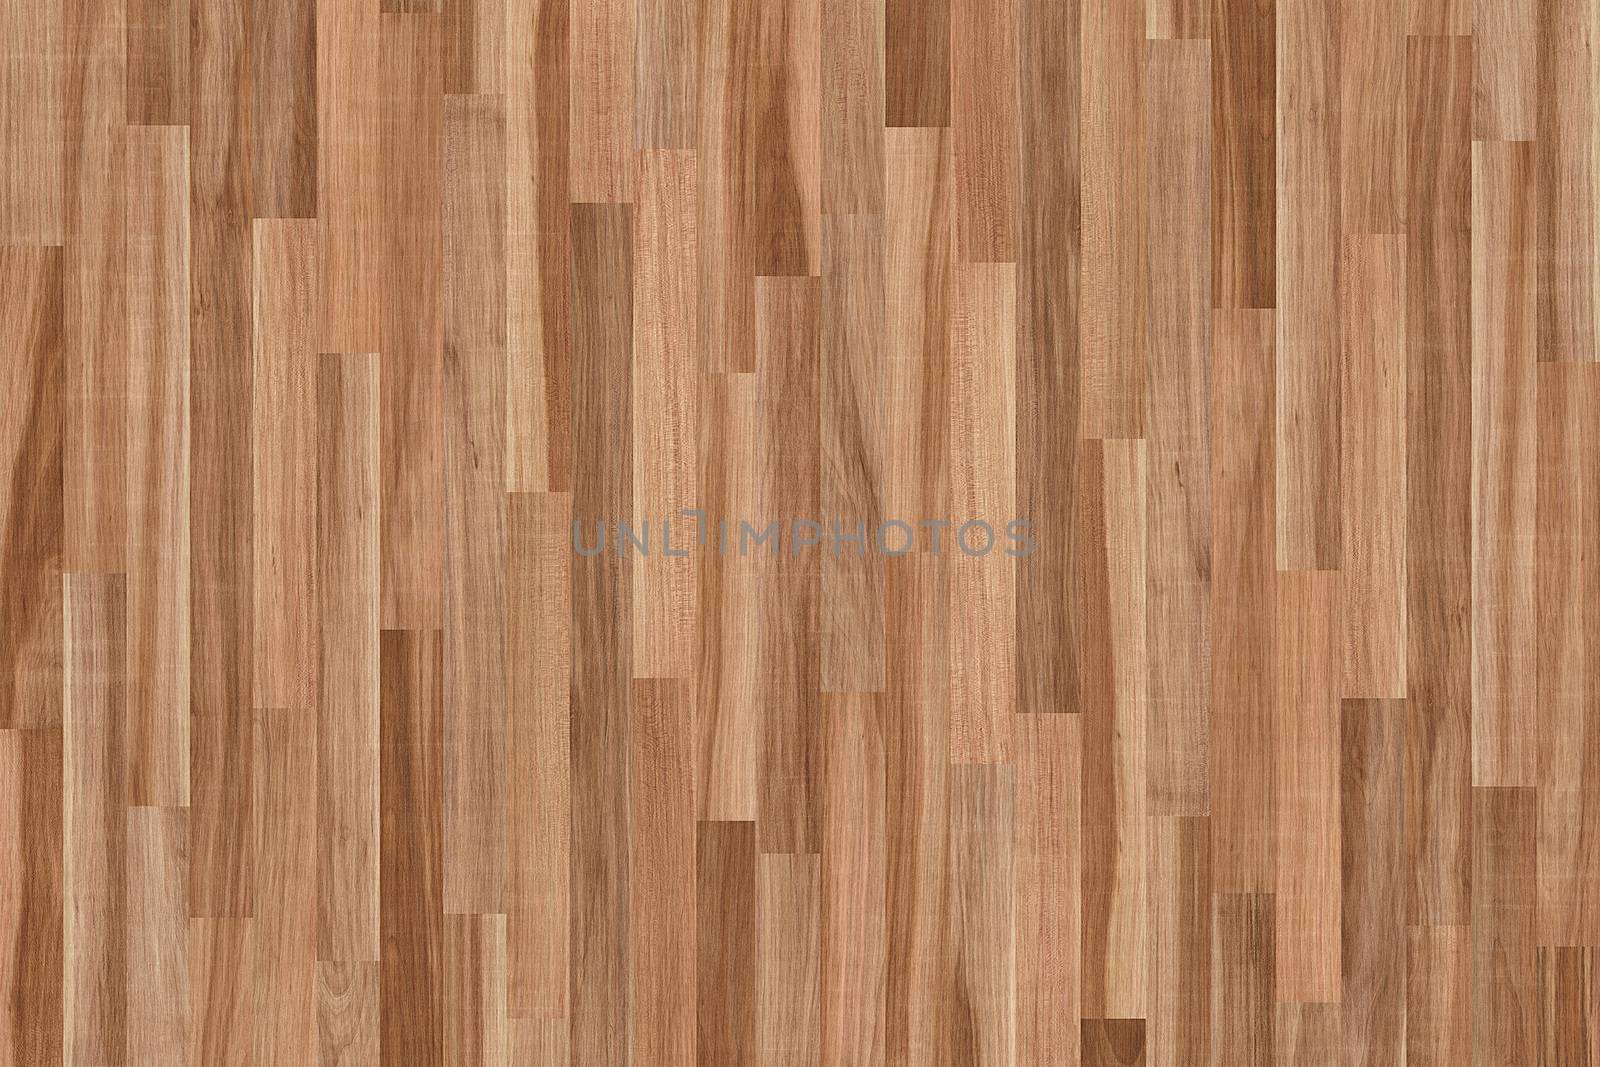 wooden parquet, Parkett, wood parquet texture by ivo_13